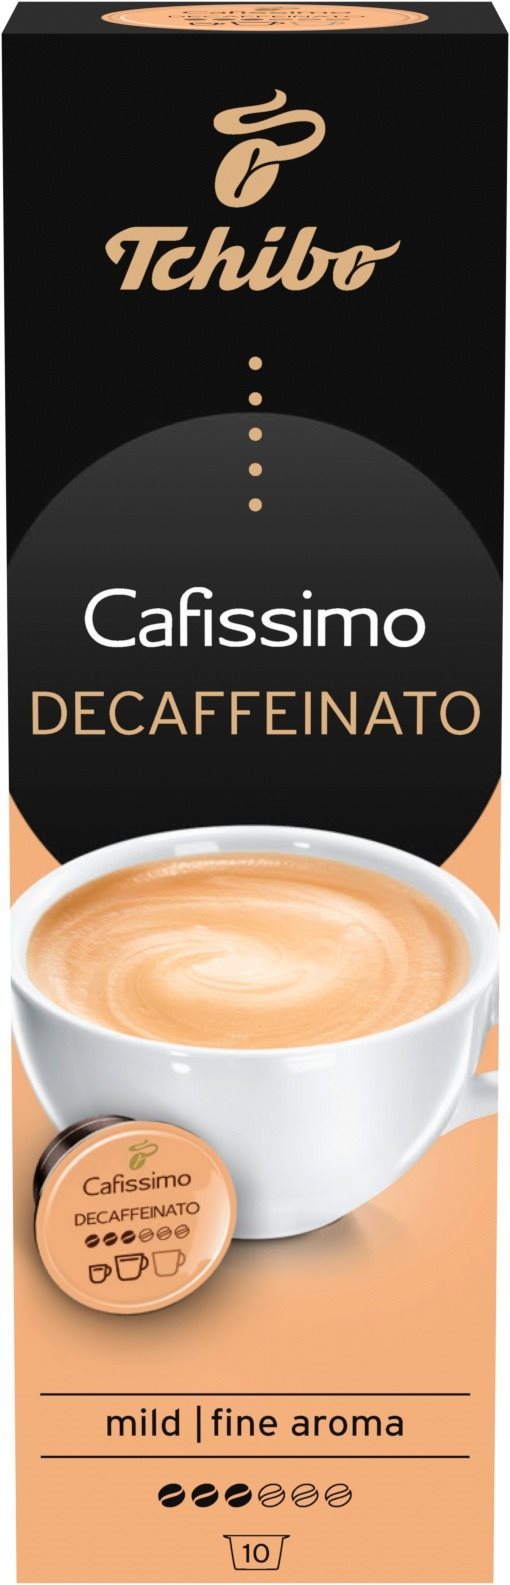 Tchibo Cafissimo Caffé Crema Decaffeinated 70g